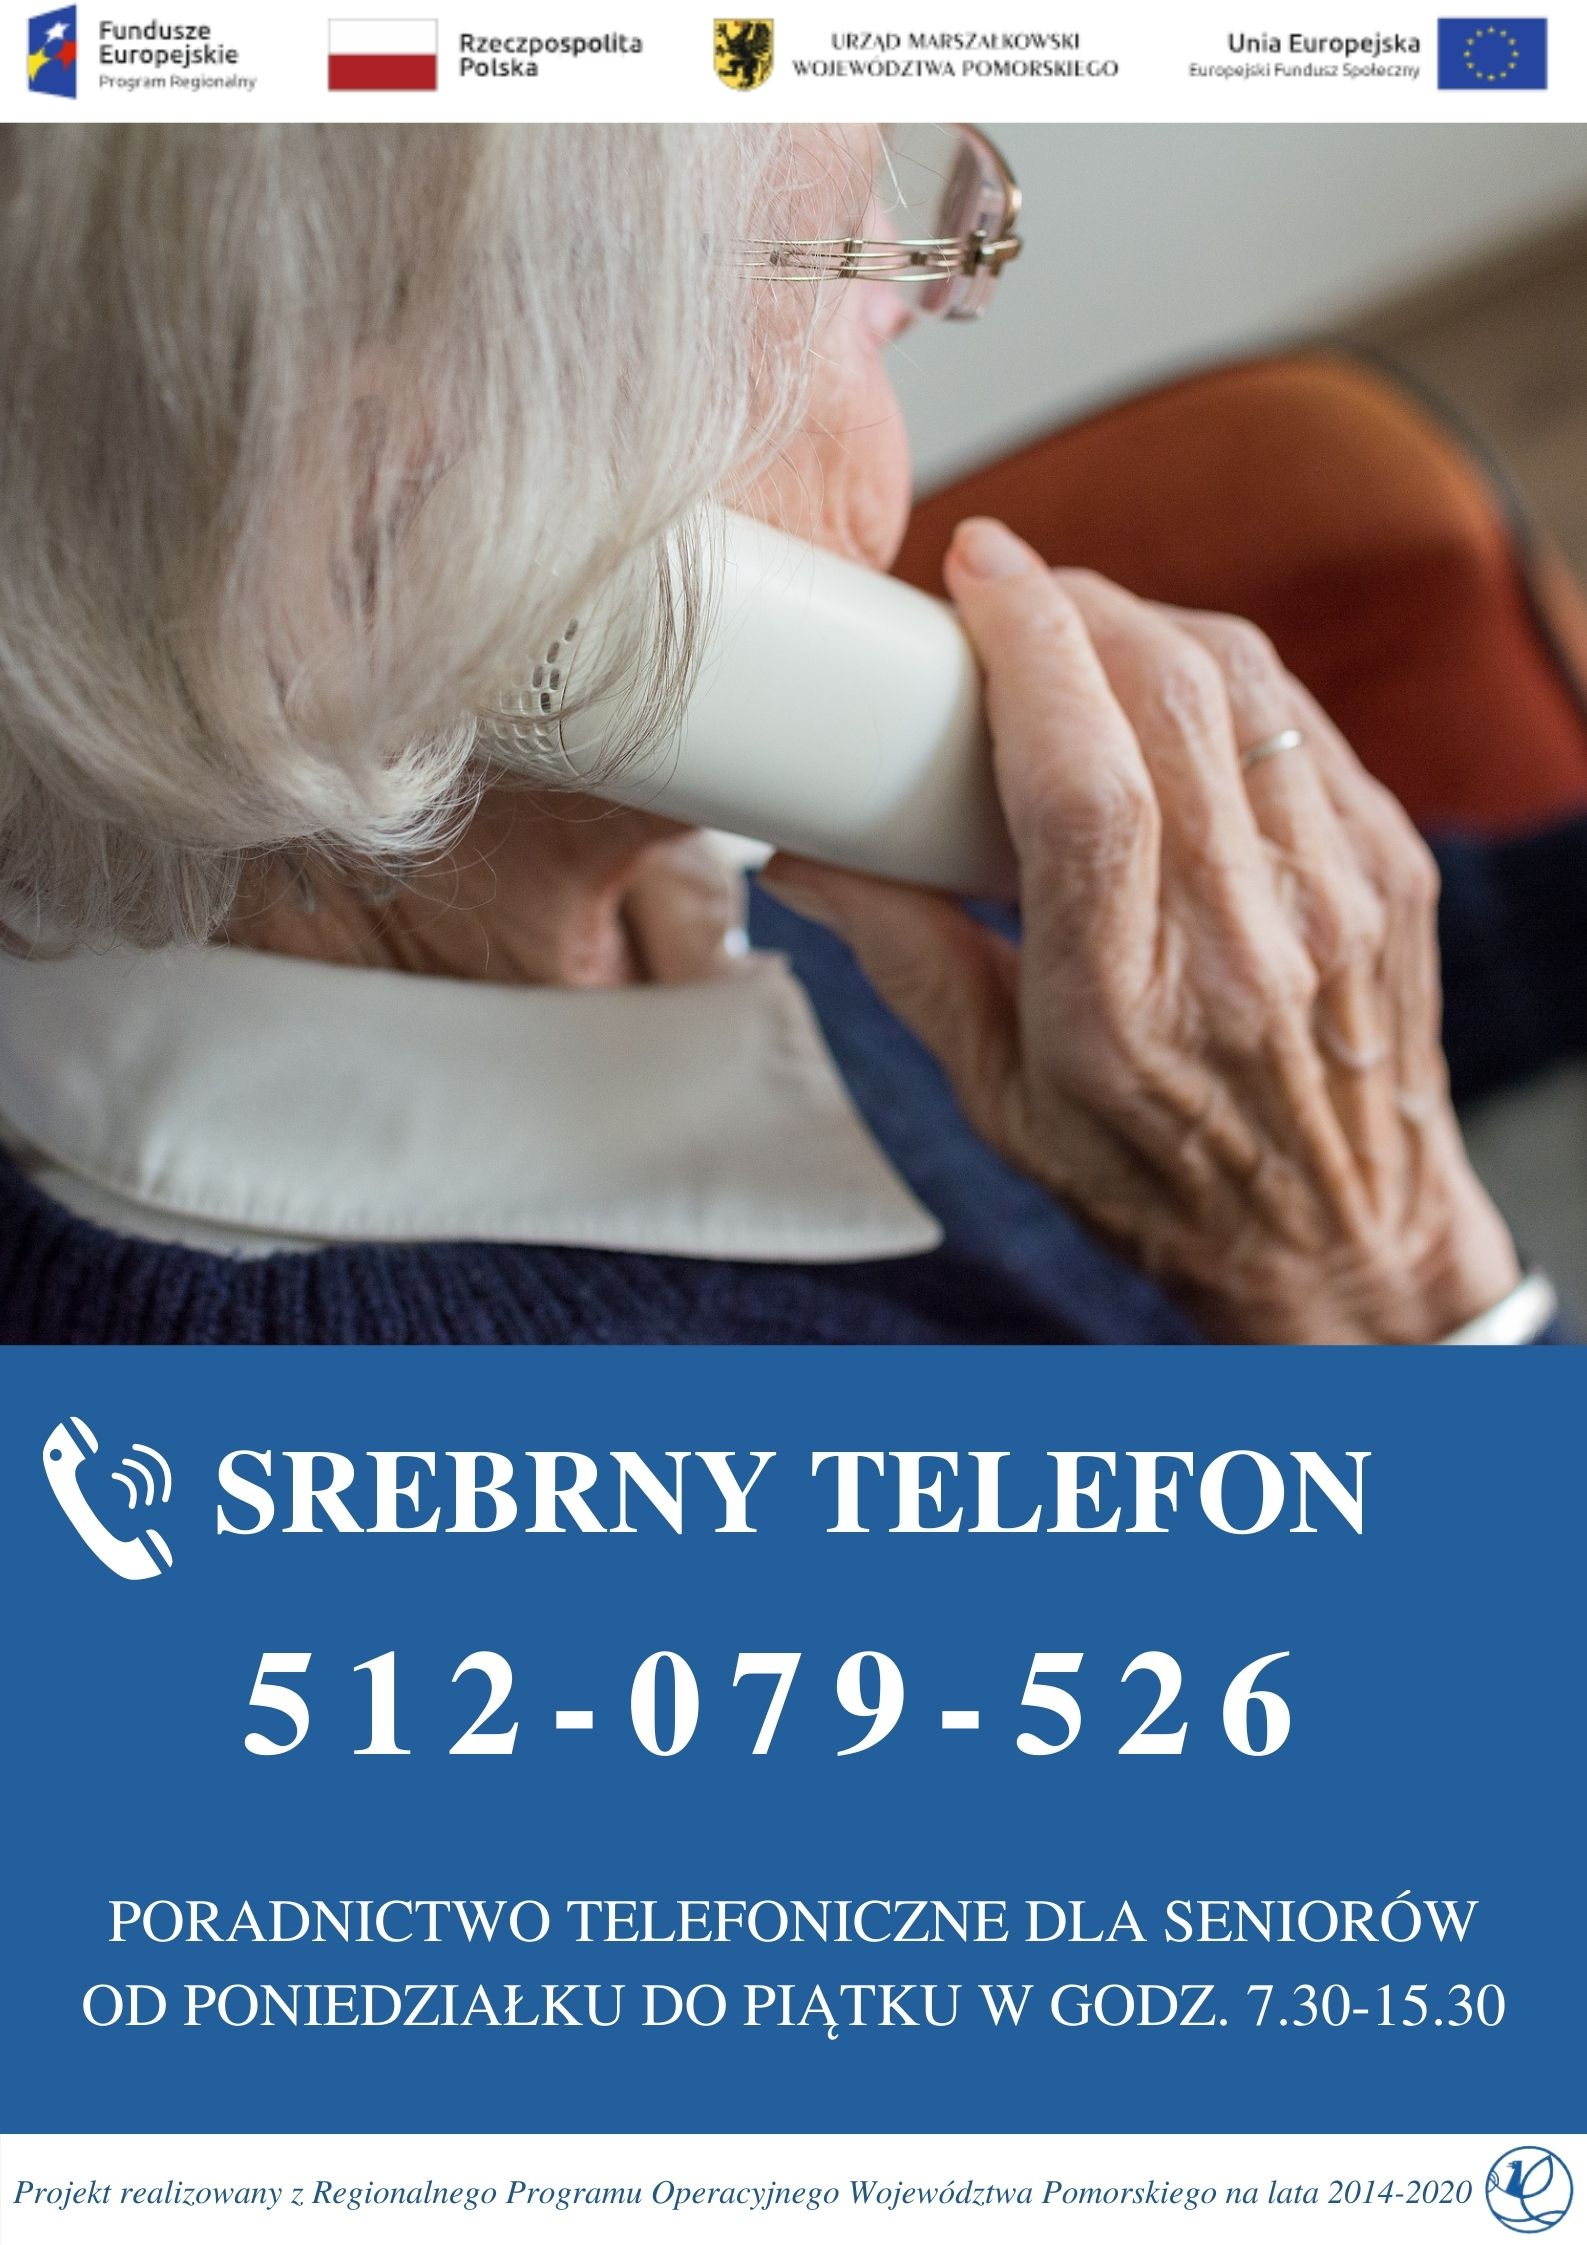 ULOTKA SREBRNY TERLEFON PRZEDSTAWIAJĄCA PROFIL SENIORKI TRZYMAJĄCEJ PRZY UCHU SŁUCHAWKĘ TELEFONU, PONIŻEJ NUMER TELEFONU